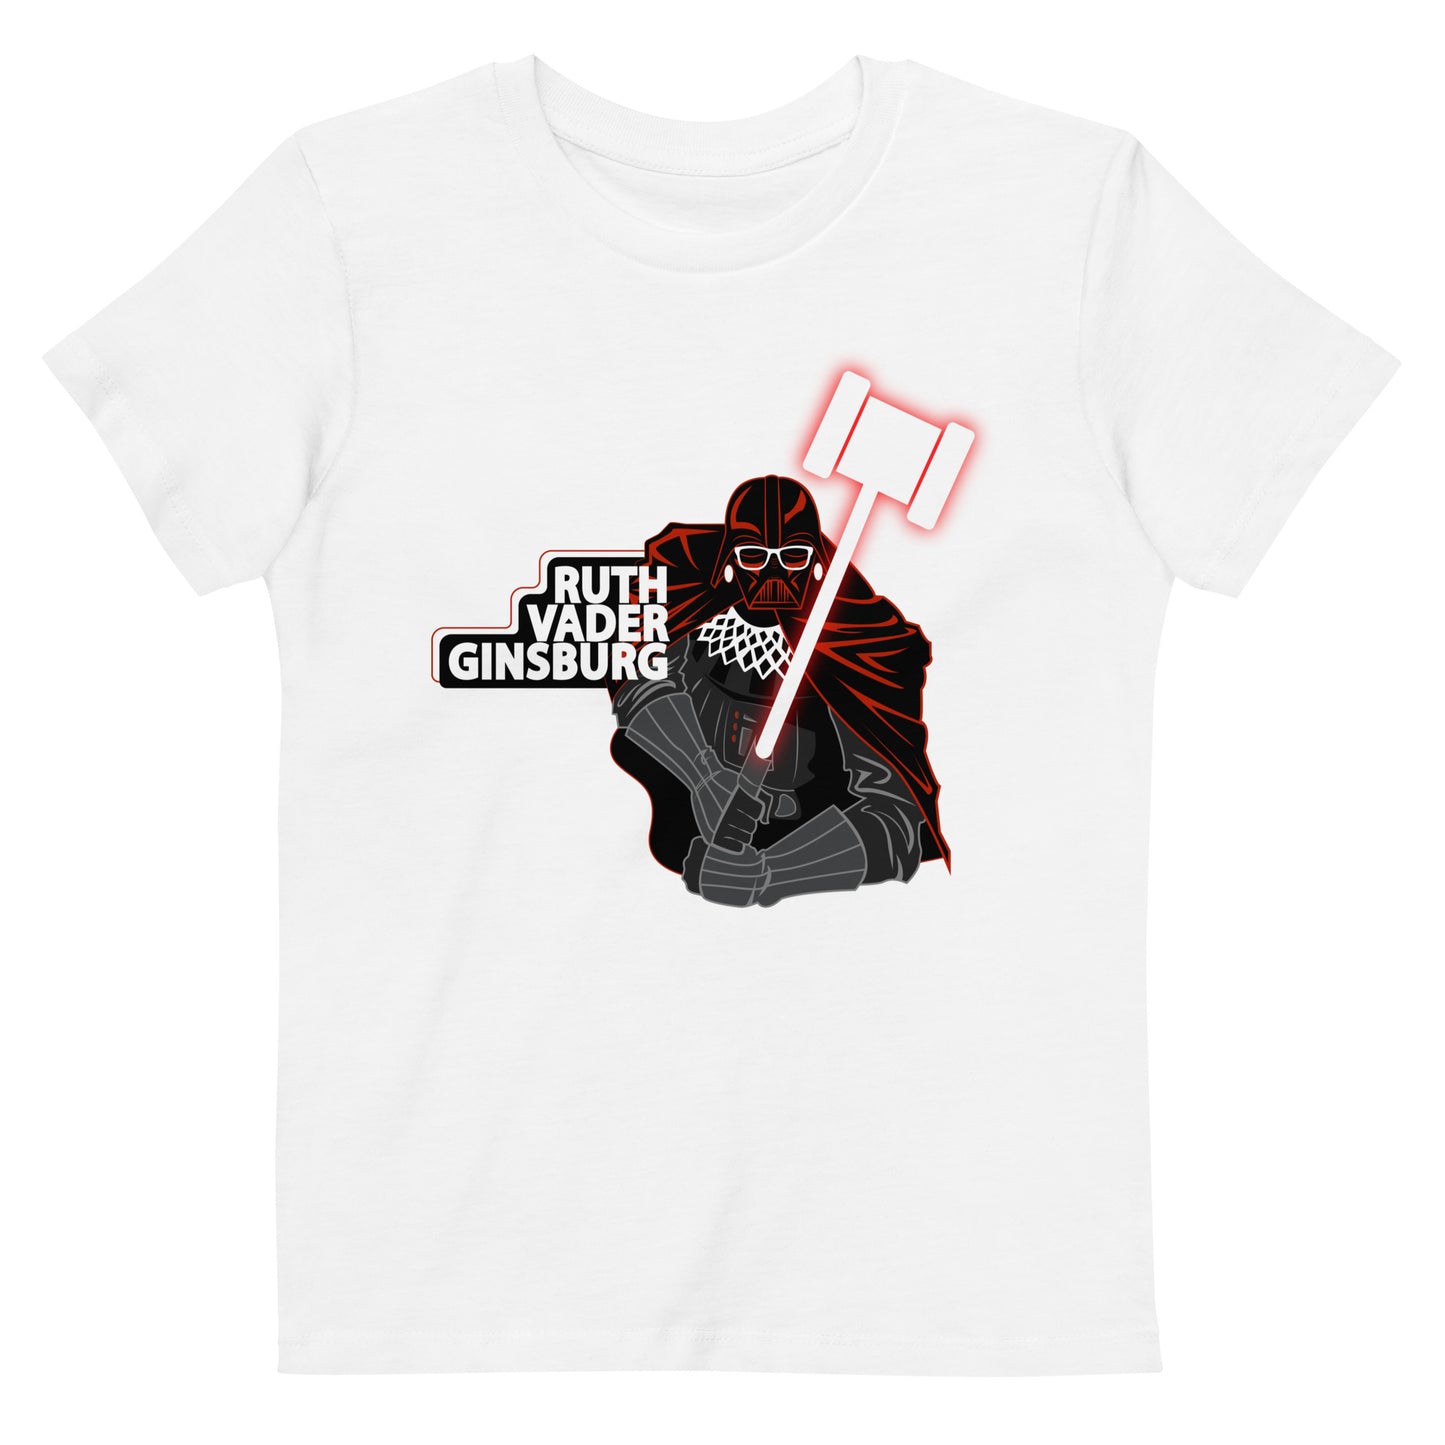 Ruth "Vader" Ginsburg kids t-shirt